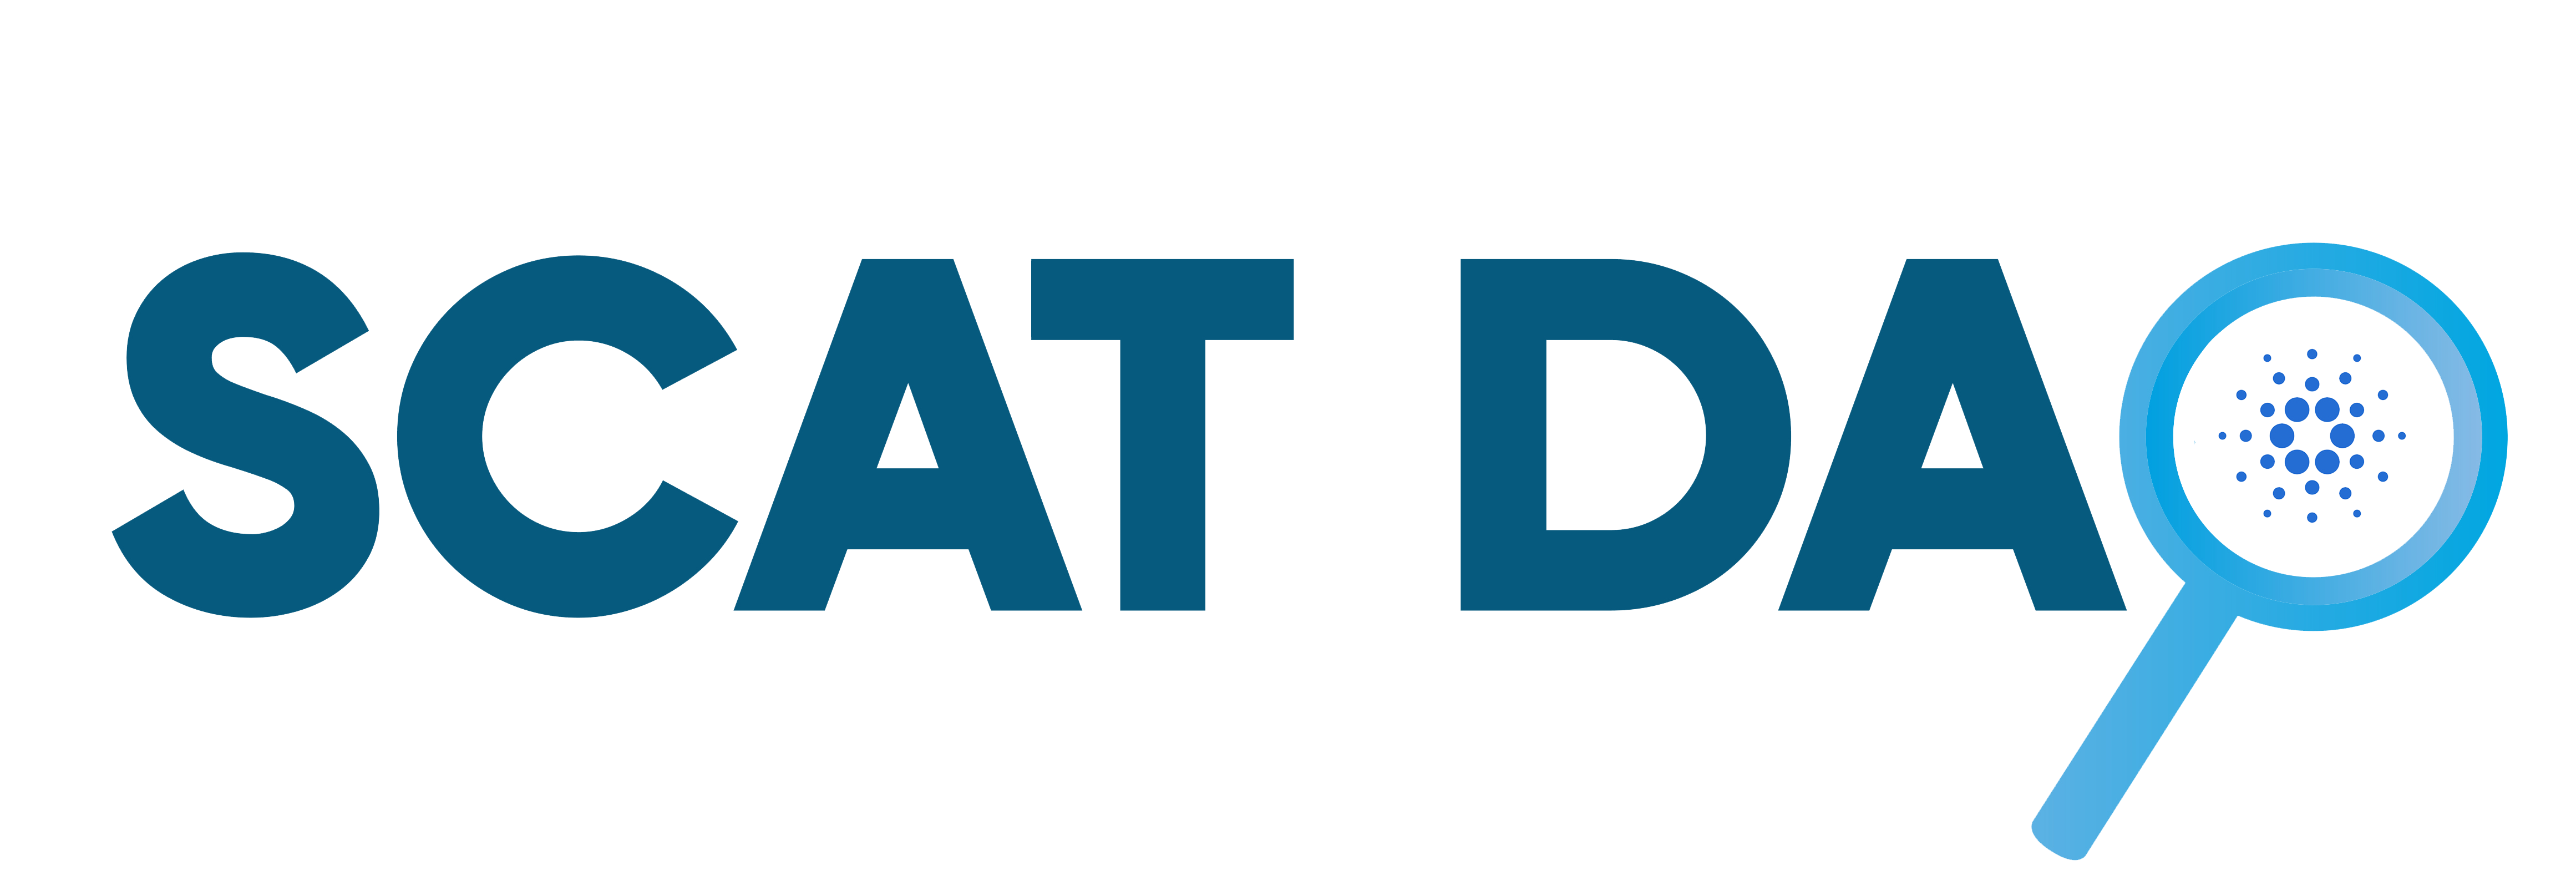 SCATDAO-Logo-Transparent-Background-c201af.png